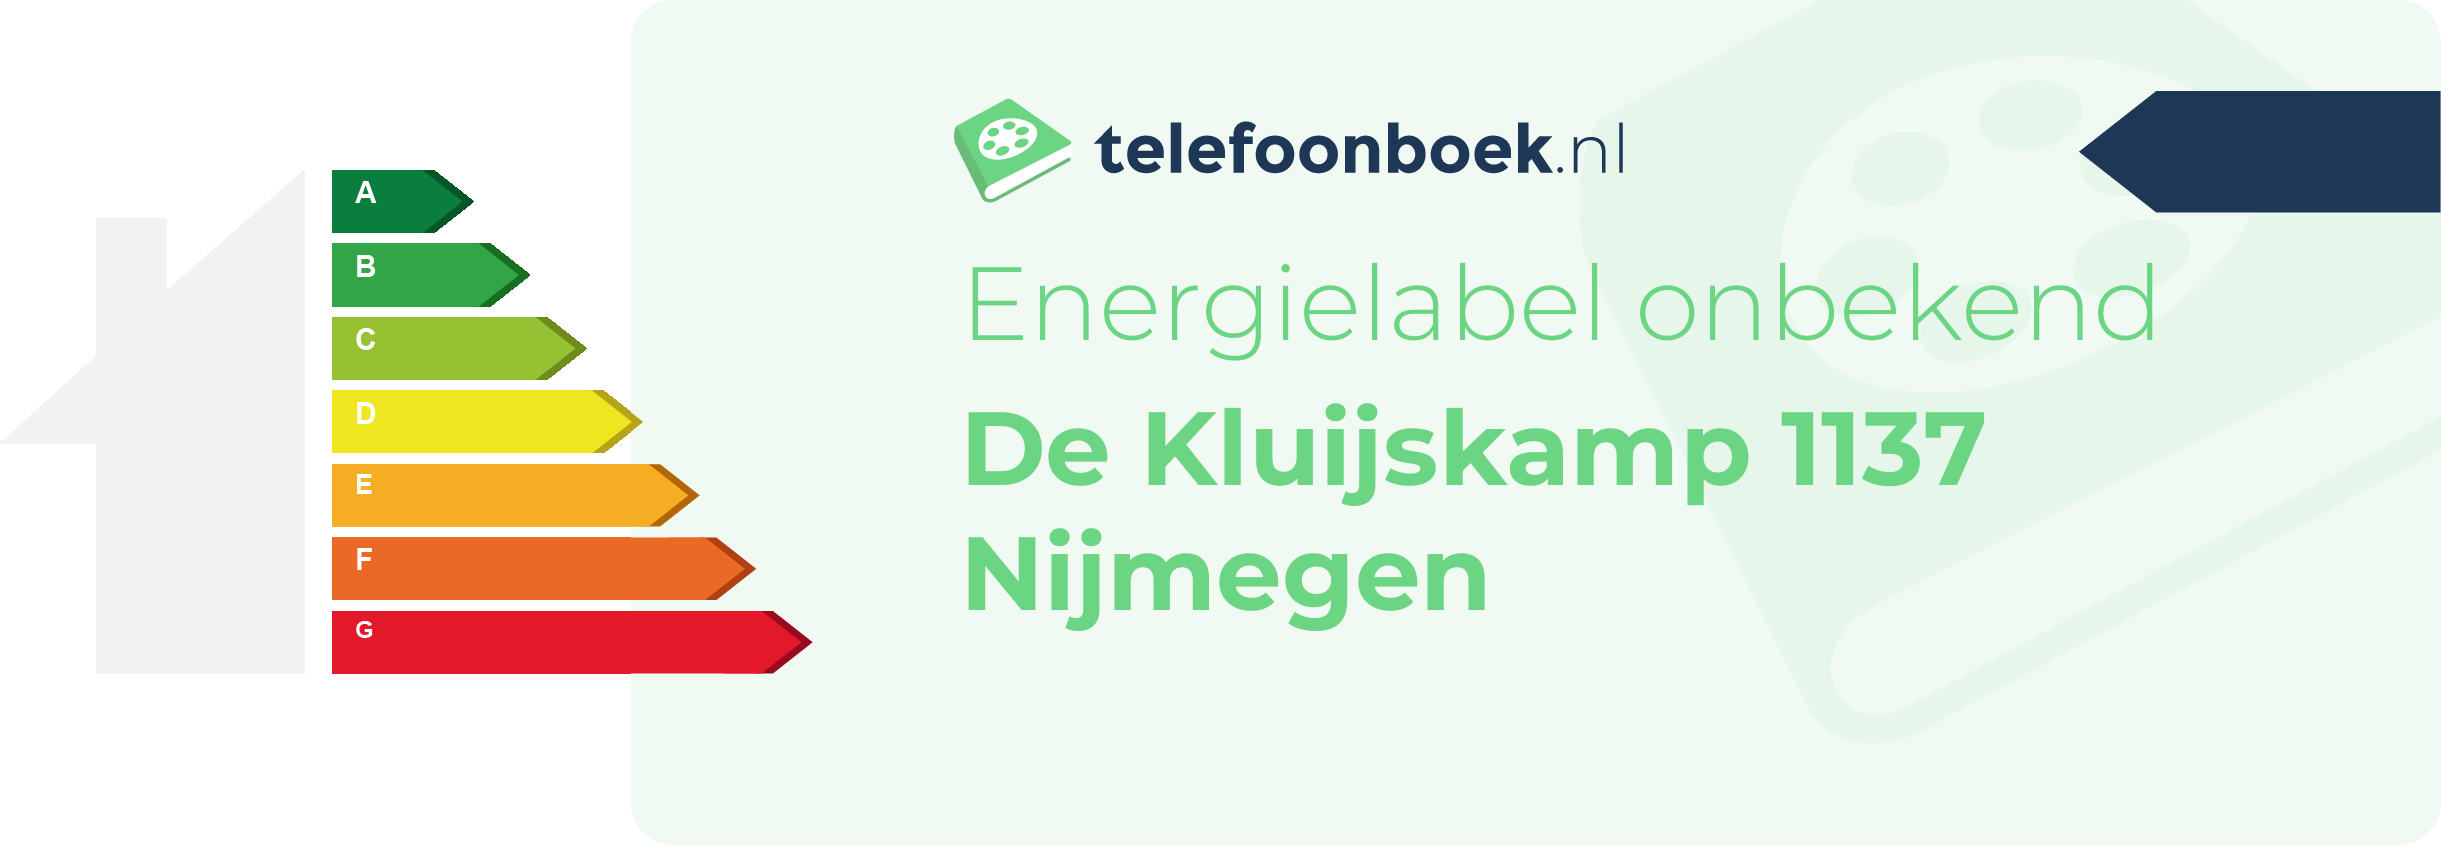 Energielabel De Kluijskamp 1137 Nijmegen